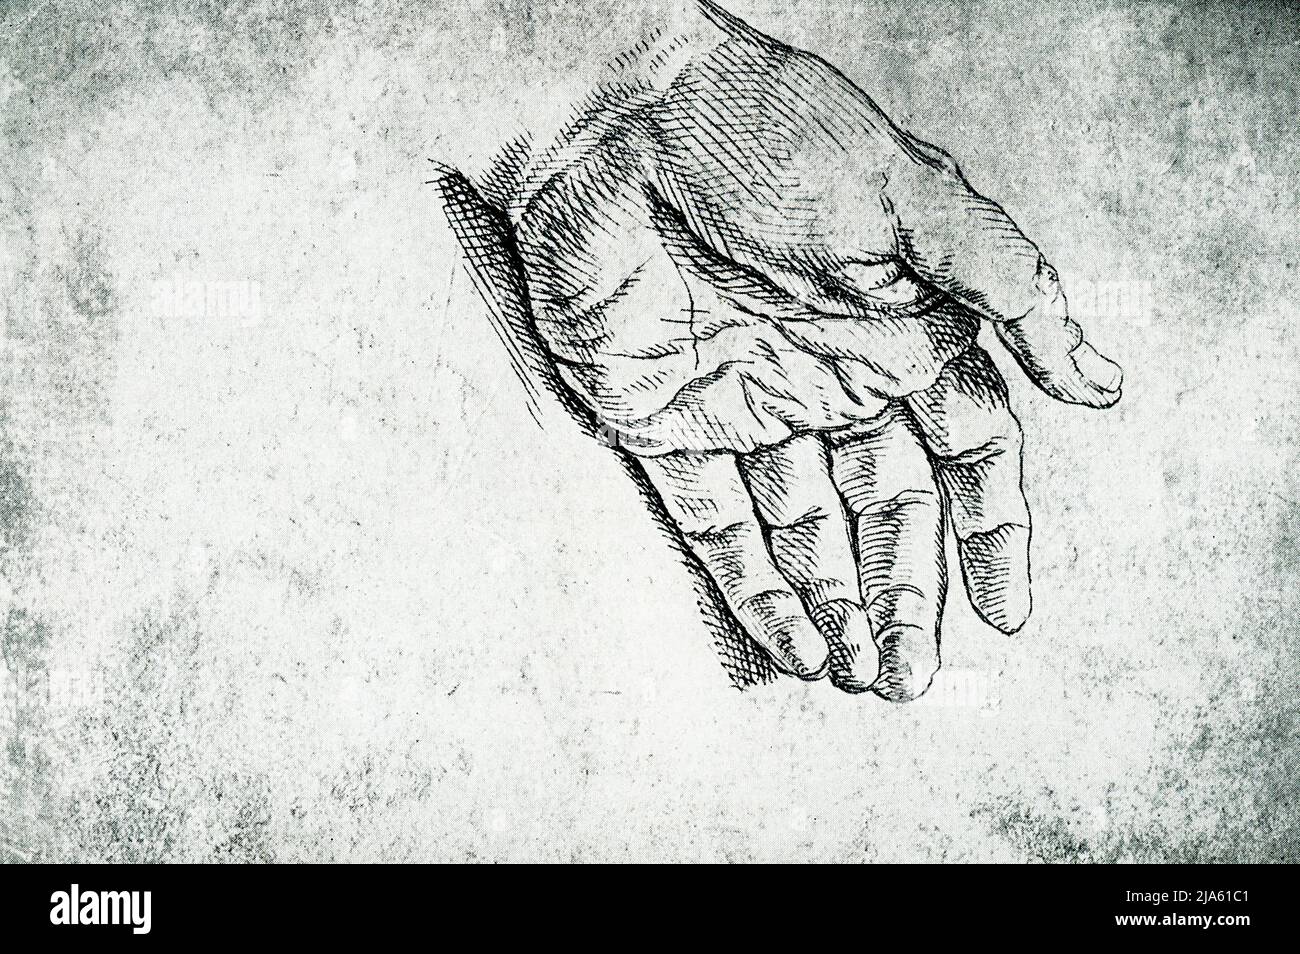 Ce dessin d'une main est de Raphaël (1483-1520). Le coussin doux de la paume et les bouts pointés des doigts semblent donner un sens de délicatesse plutôt que de force. Raffaello Sanzio da Urbino était un peintre et architecte italien de la haute Renaissance. Son œuvre est admirée pour sa clarté de forme, sa facilité de composition et la réalisation visuelle de l'idéal néoplatonique de grandeur humaine Banque D'Images